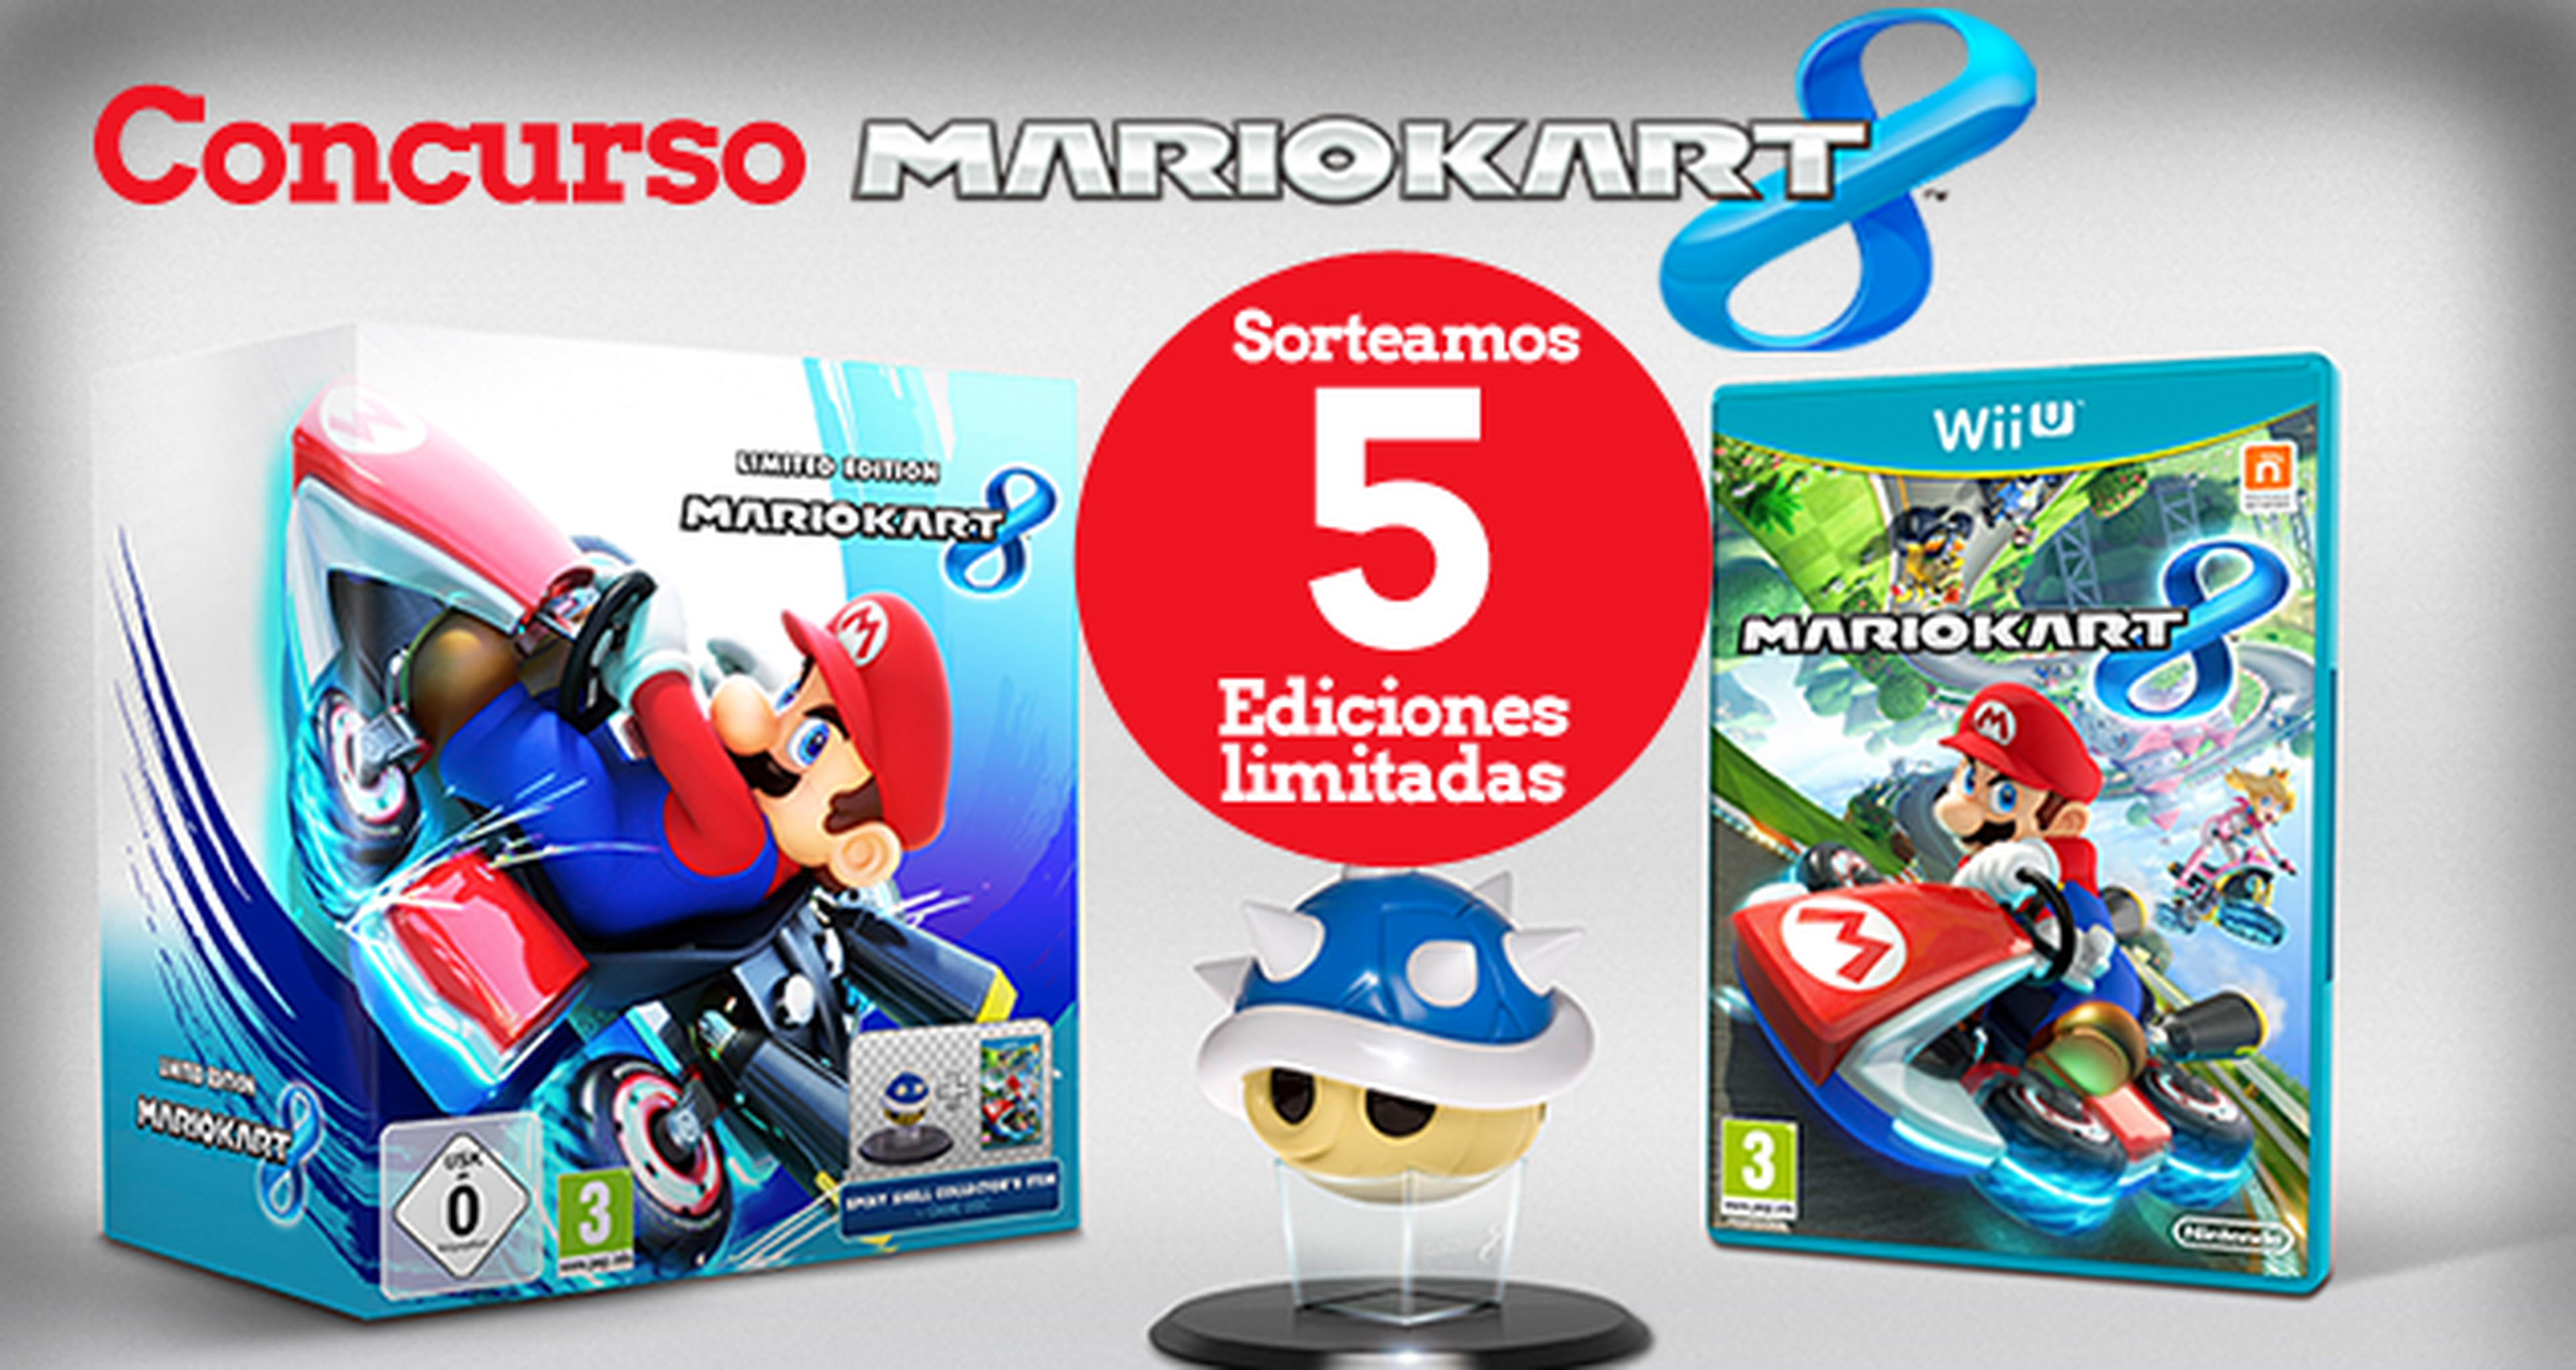 Concurso Mario Kart 8: regalamos 5 ediciones limitadas